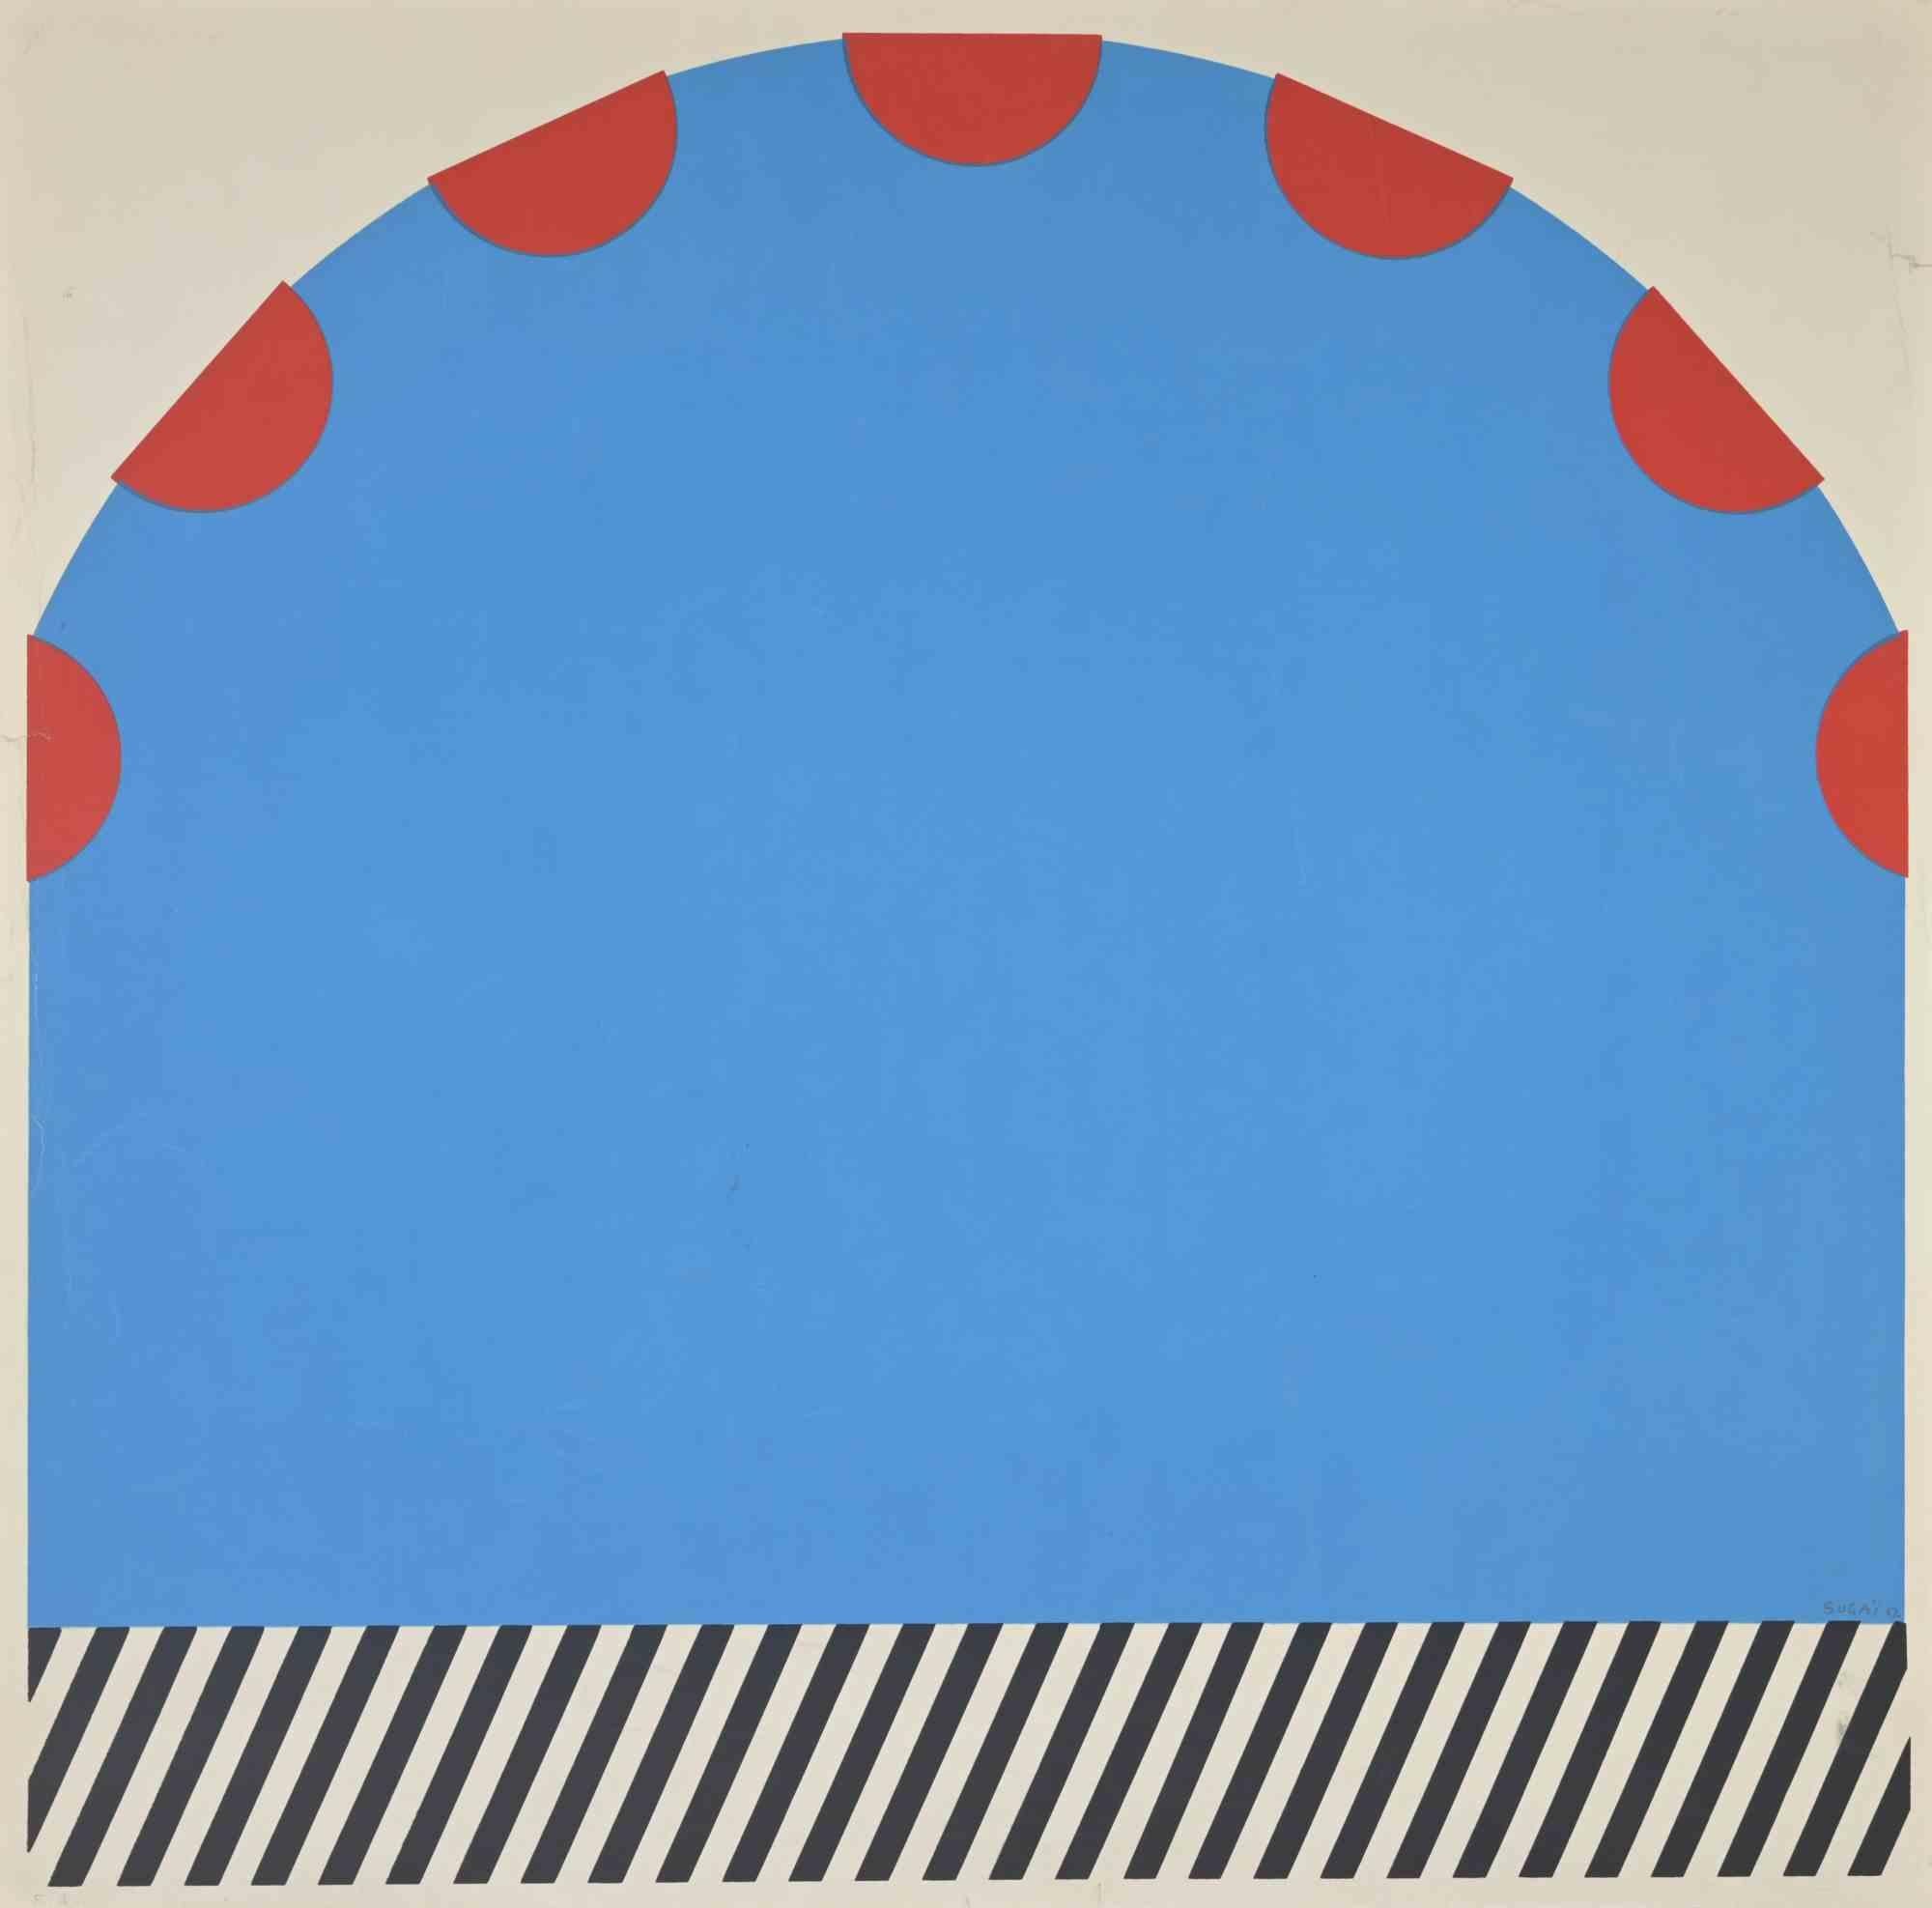 Abstract Composition ist eine Farblithographie des japanischen Künstlers Kumi Sugai aus dem Jahr 1960.

Guter Zustand bis auf leichte Schnitte und Falten an den Rändern.

Kumi Sugai (1919-1996) war ein japanischer Maler, Bildhauer und Grafiker, 